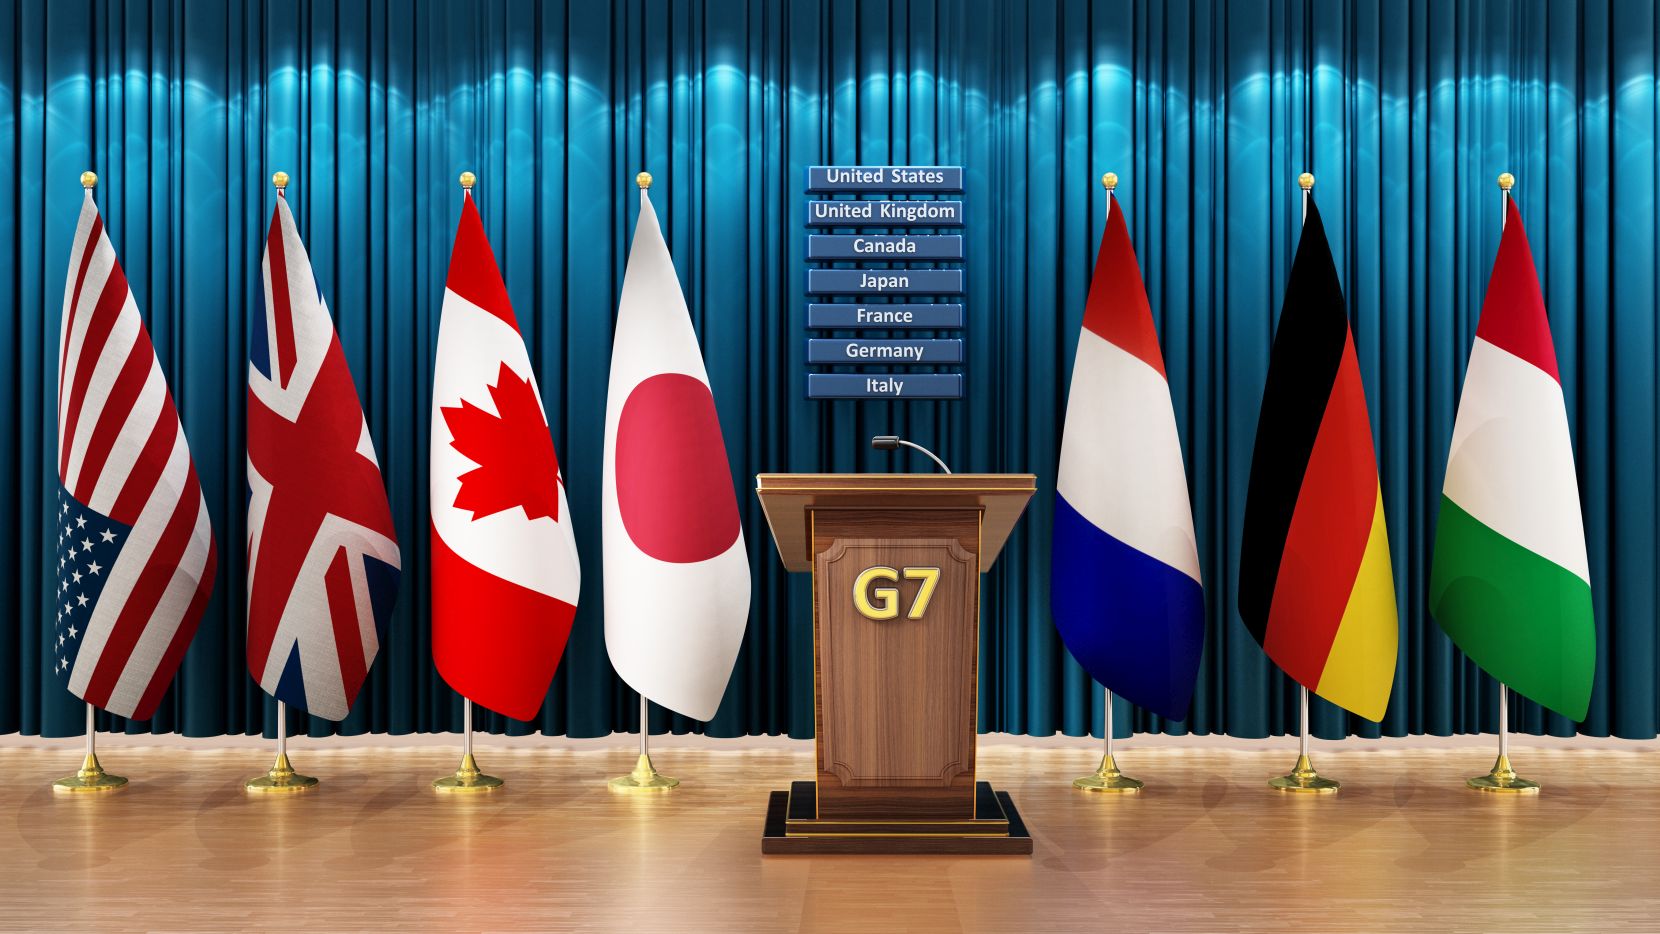 韓国 G7に招待された 近い内正式メンバーに招待されるはず 海外 無いと思うよ 海外の反応 ぽぷめでぃ 海外の反応 日本の反応